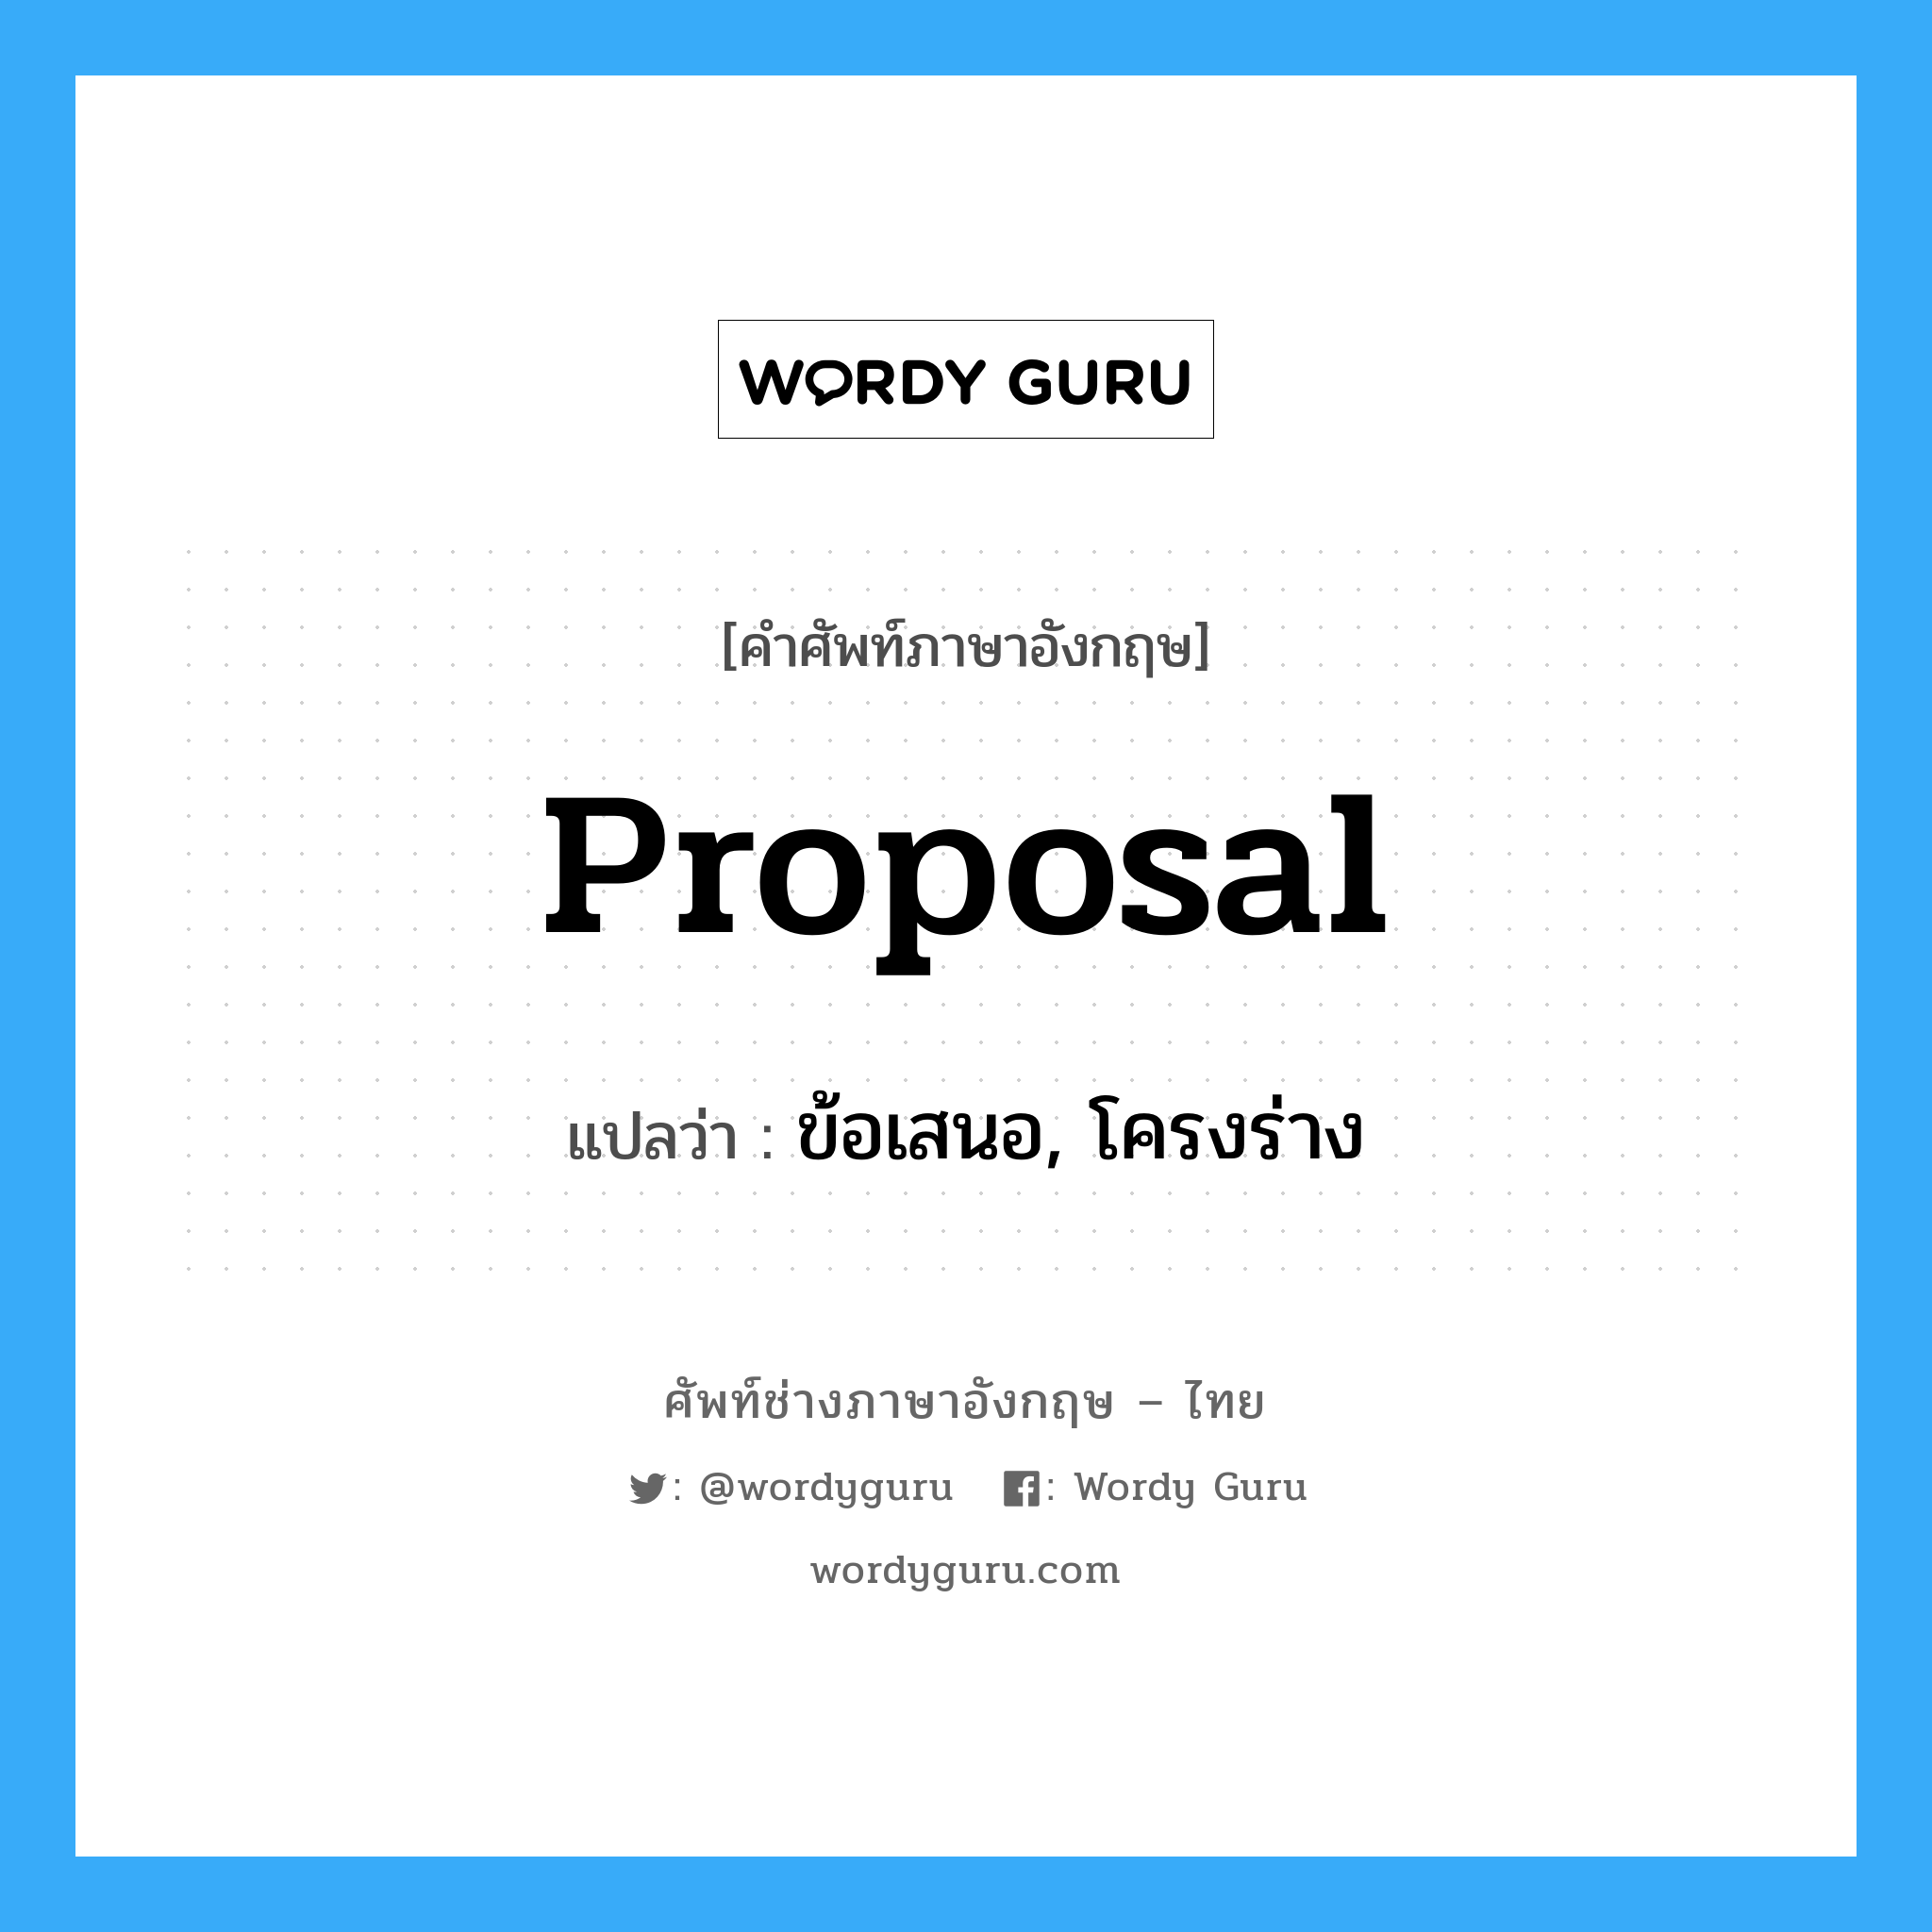 proposal แปลว่า?, คำศัพท์ช่างภาษาอังกฤษ - ไทย proposal คำศัพท์ภาษาอังกฤษ proposal แปลว่า ข้อเสนอ, โครงร่าง